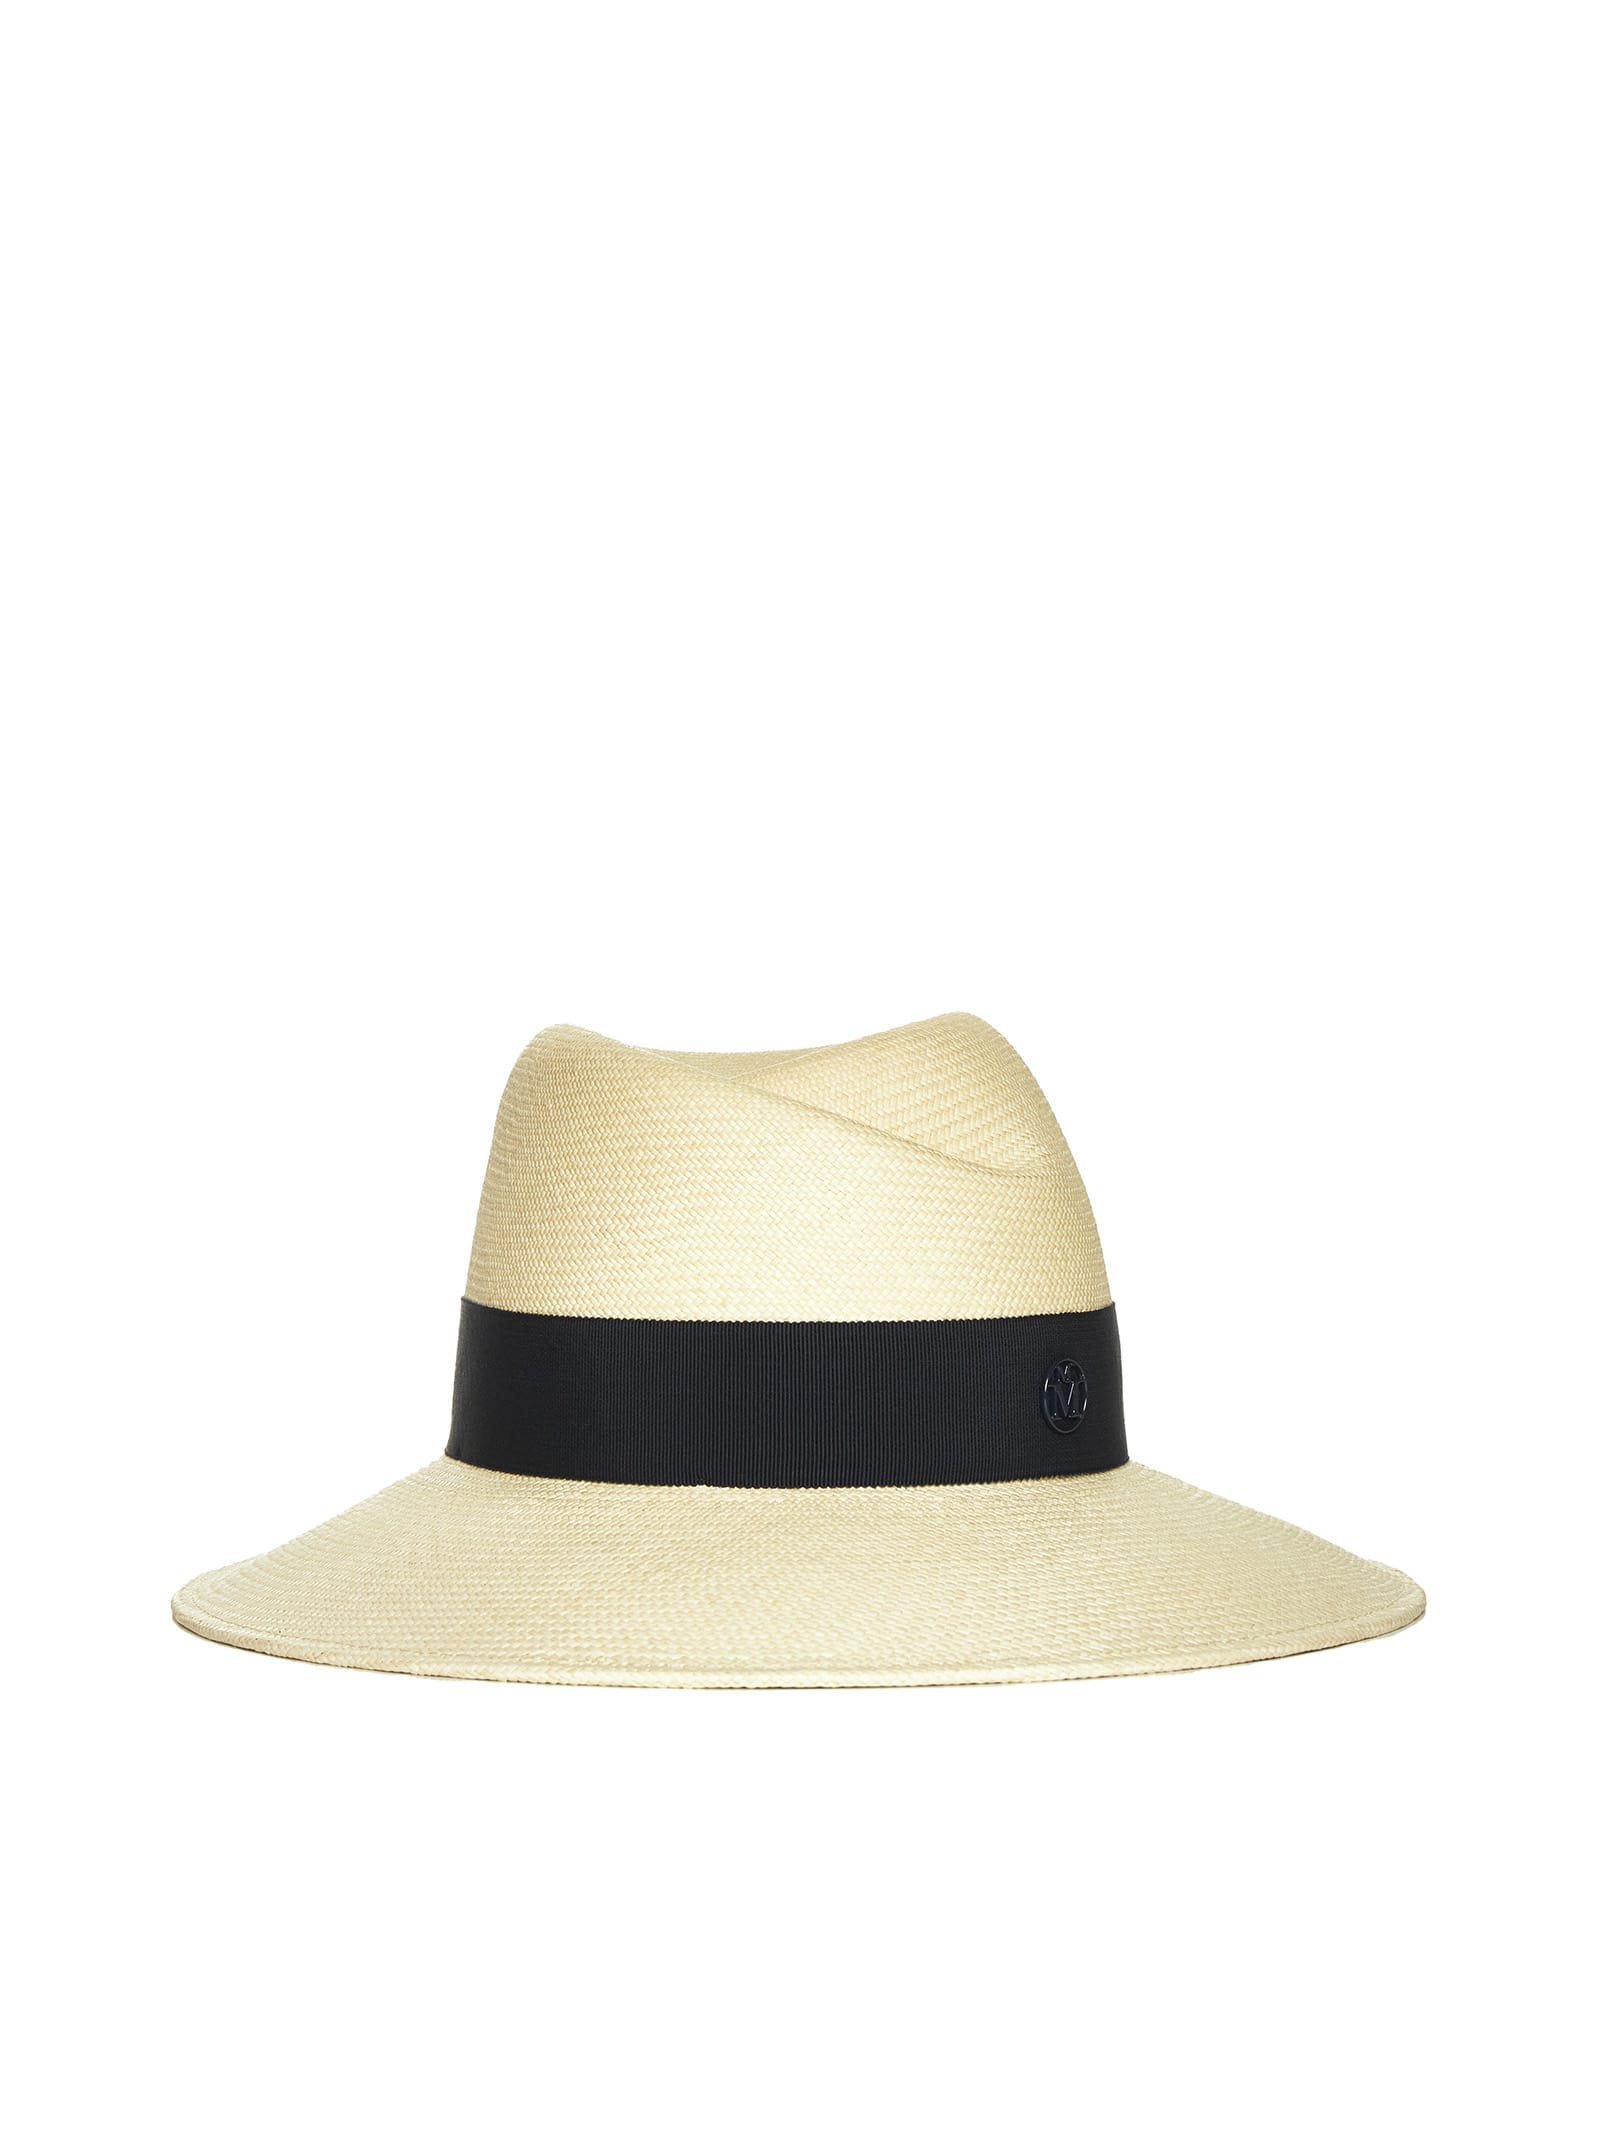 Maison Michel Hat In Navy